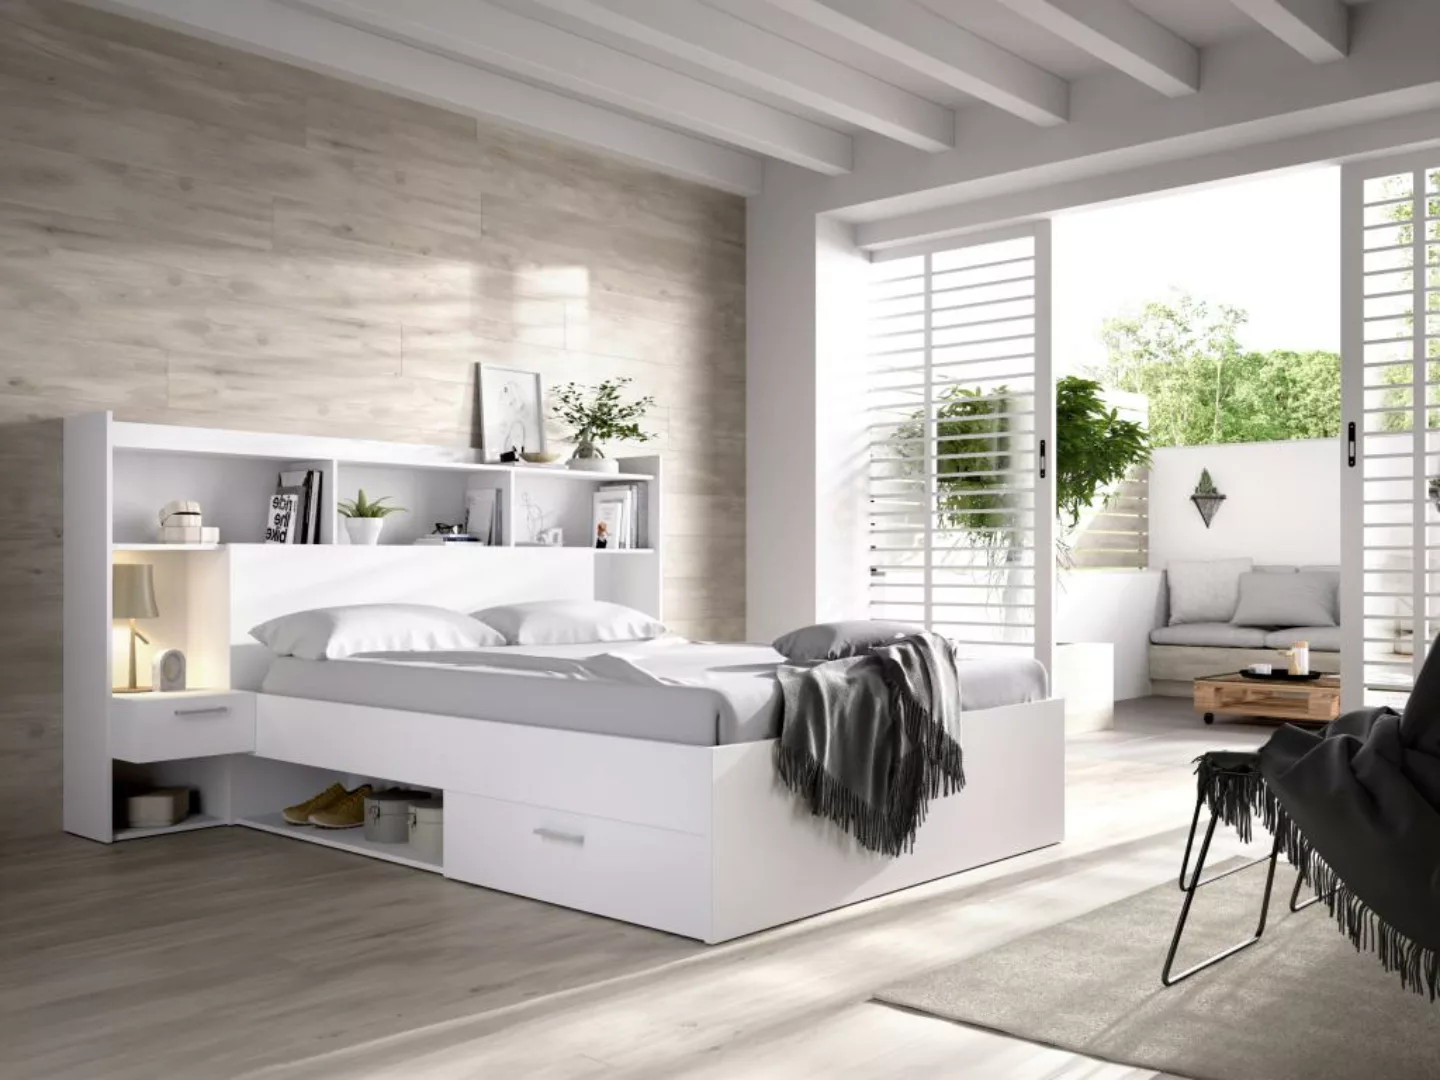 Bett mit Stauraum & integrierten Nachttischen - 140 x 190 cm - Weiß - KEVIN günstig online kaufen